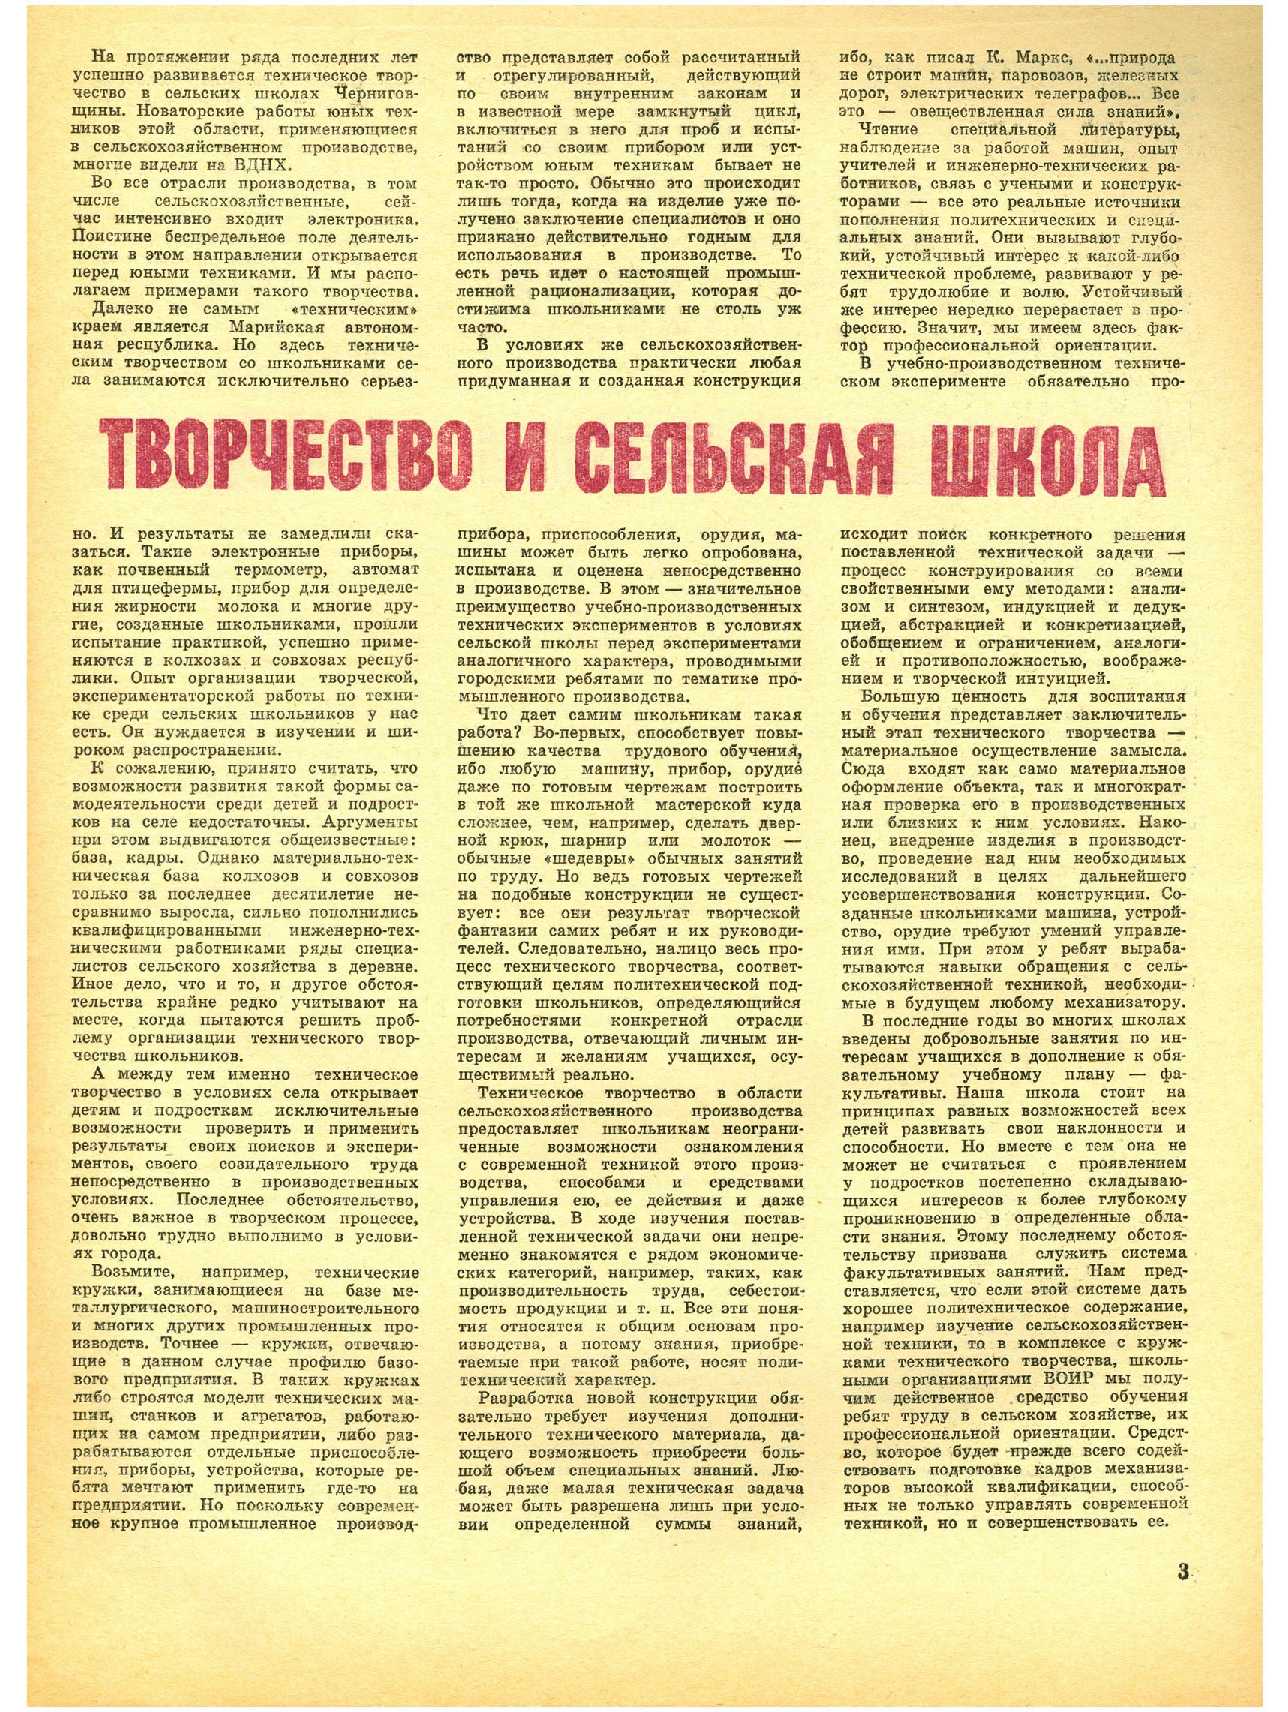 МК 10, 1970, 3 c.